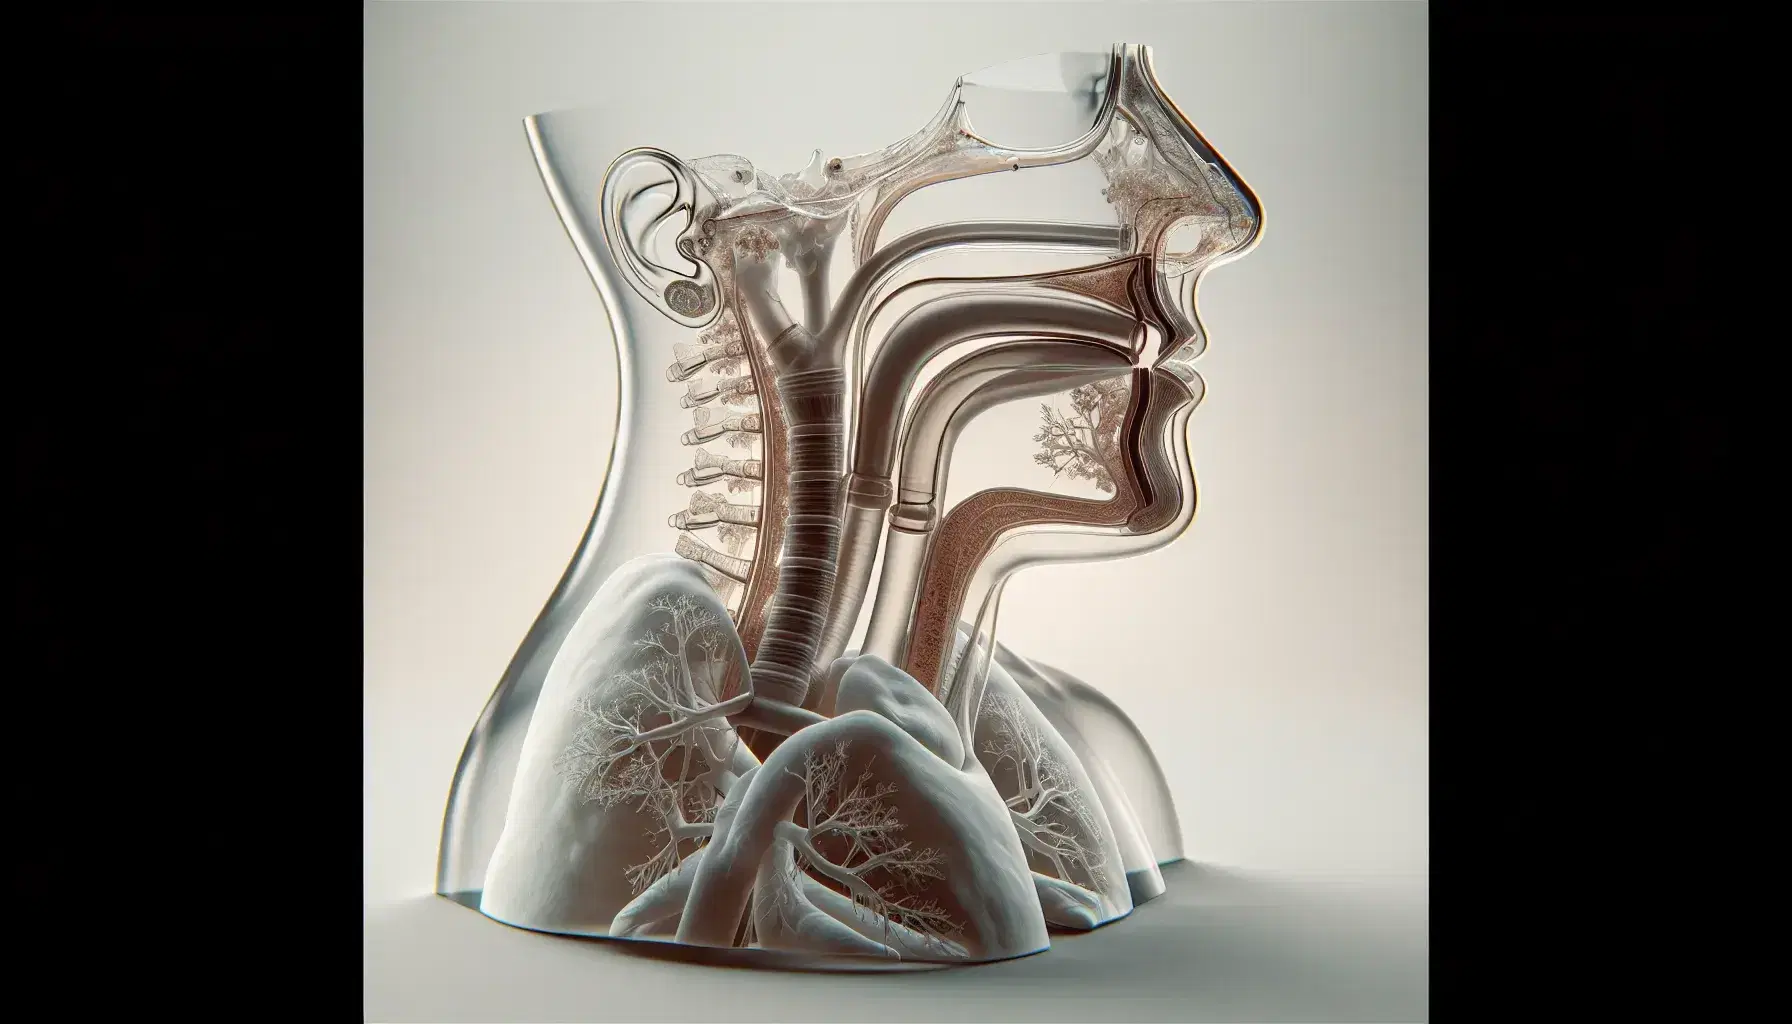 Modello anatomico trasparente del sistema respiratorio umano con naso, faringe, laringe, trachea, bronchi e polmoni visibili.